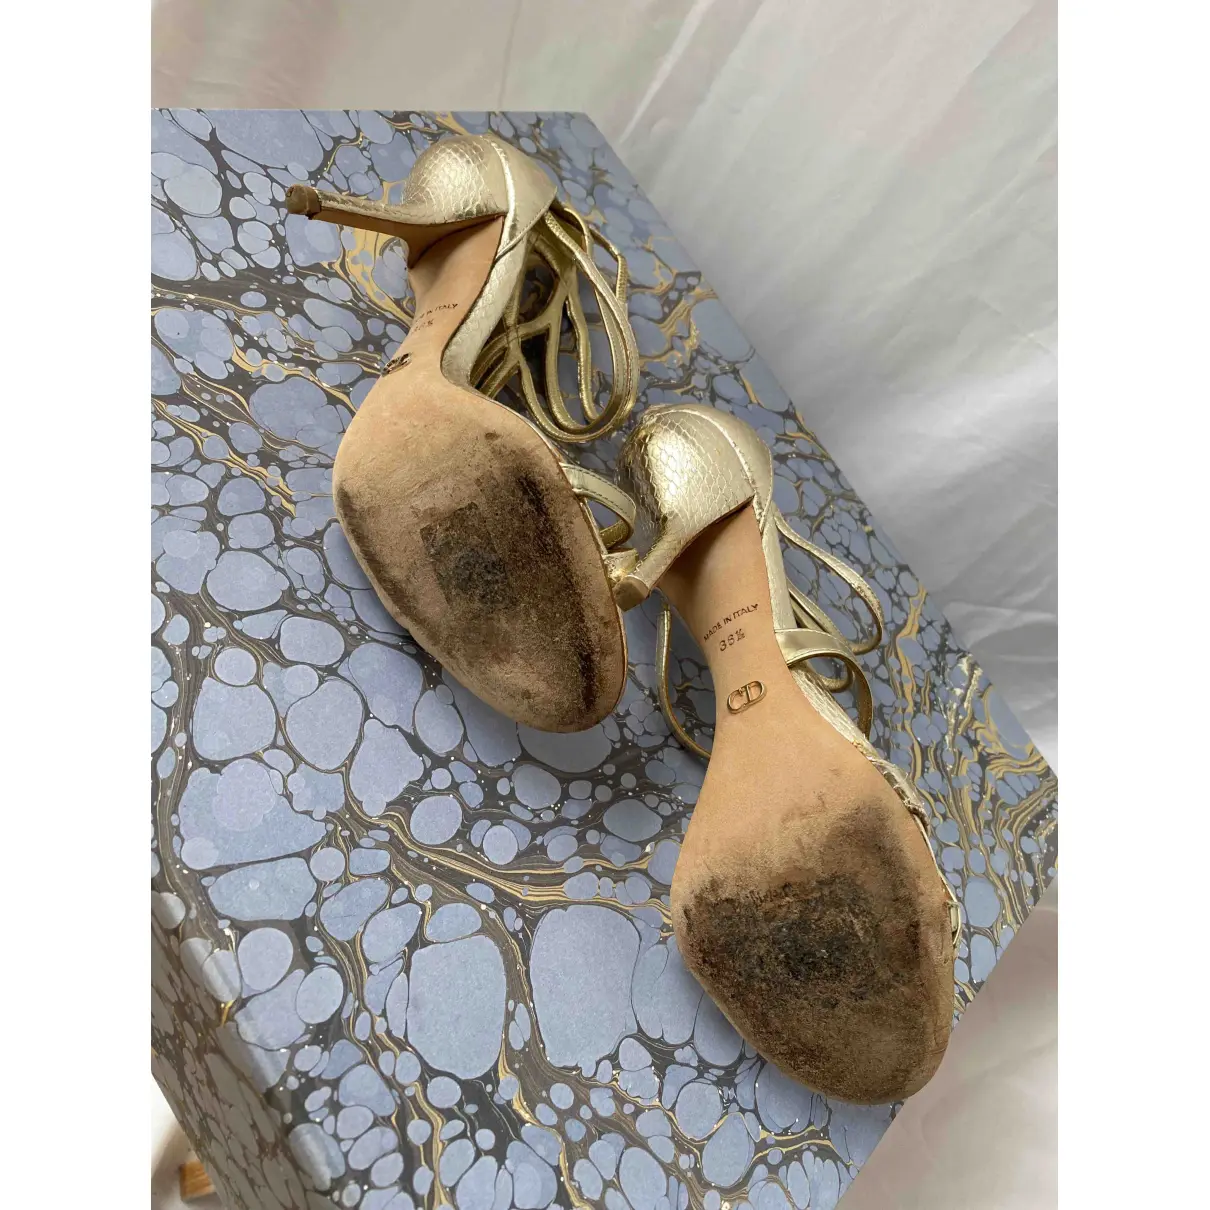 Python sandals Dior